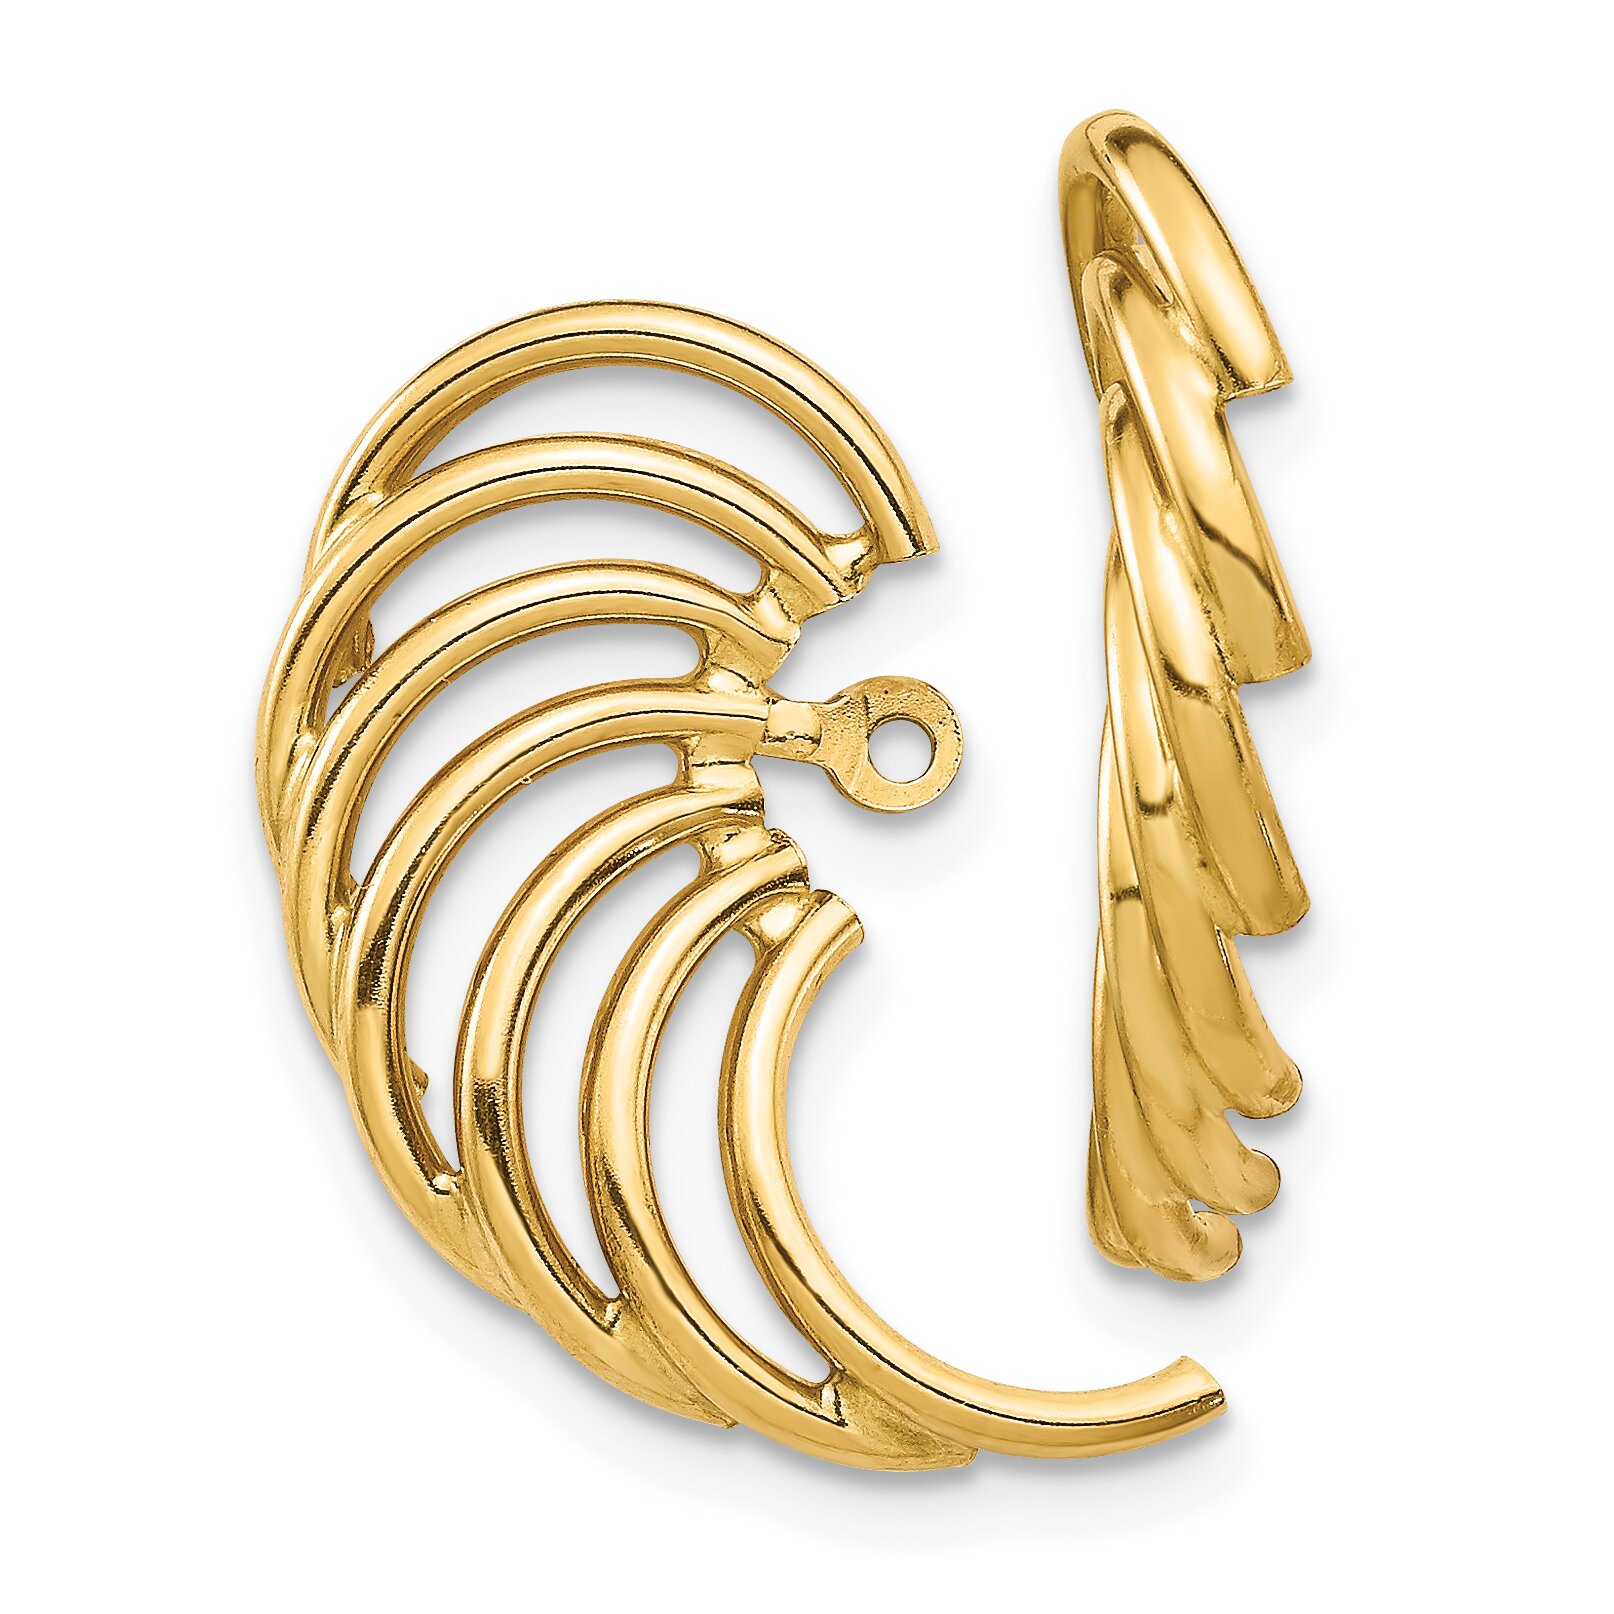 Findingking 14K Gold Swirl Shaped Earring Jackets Jewelry